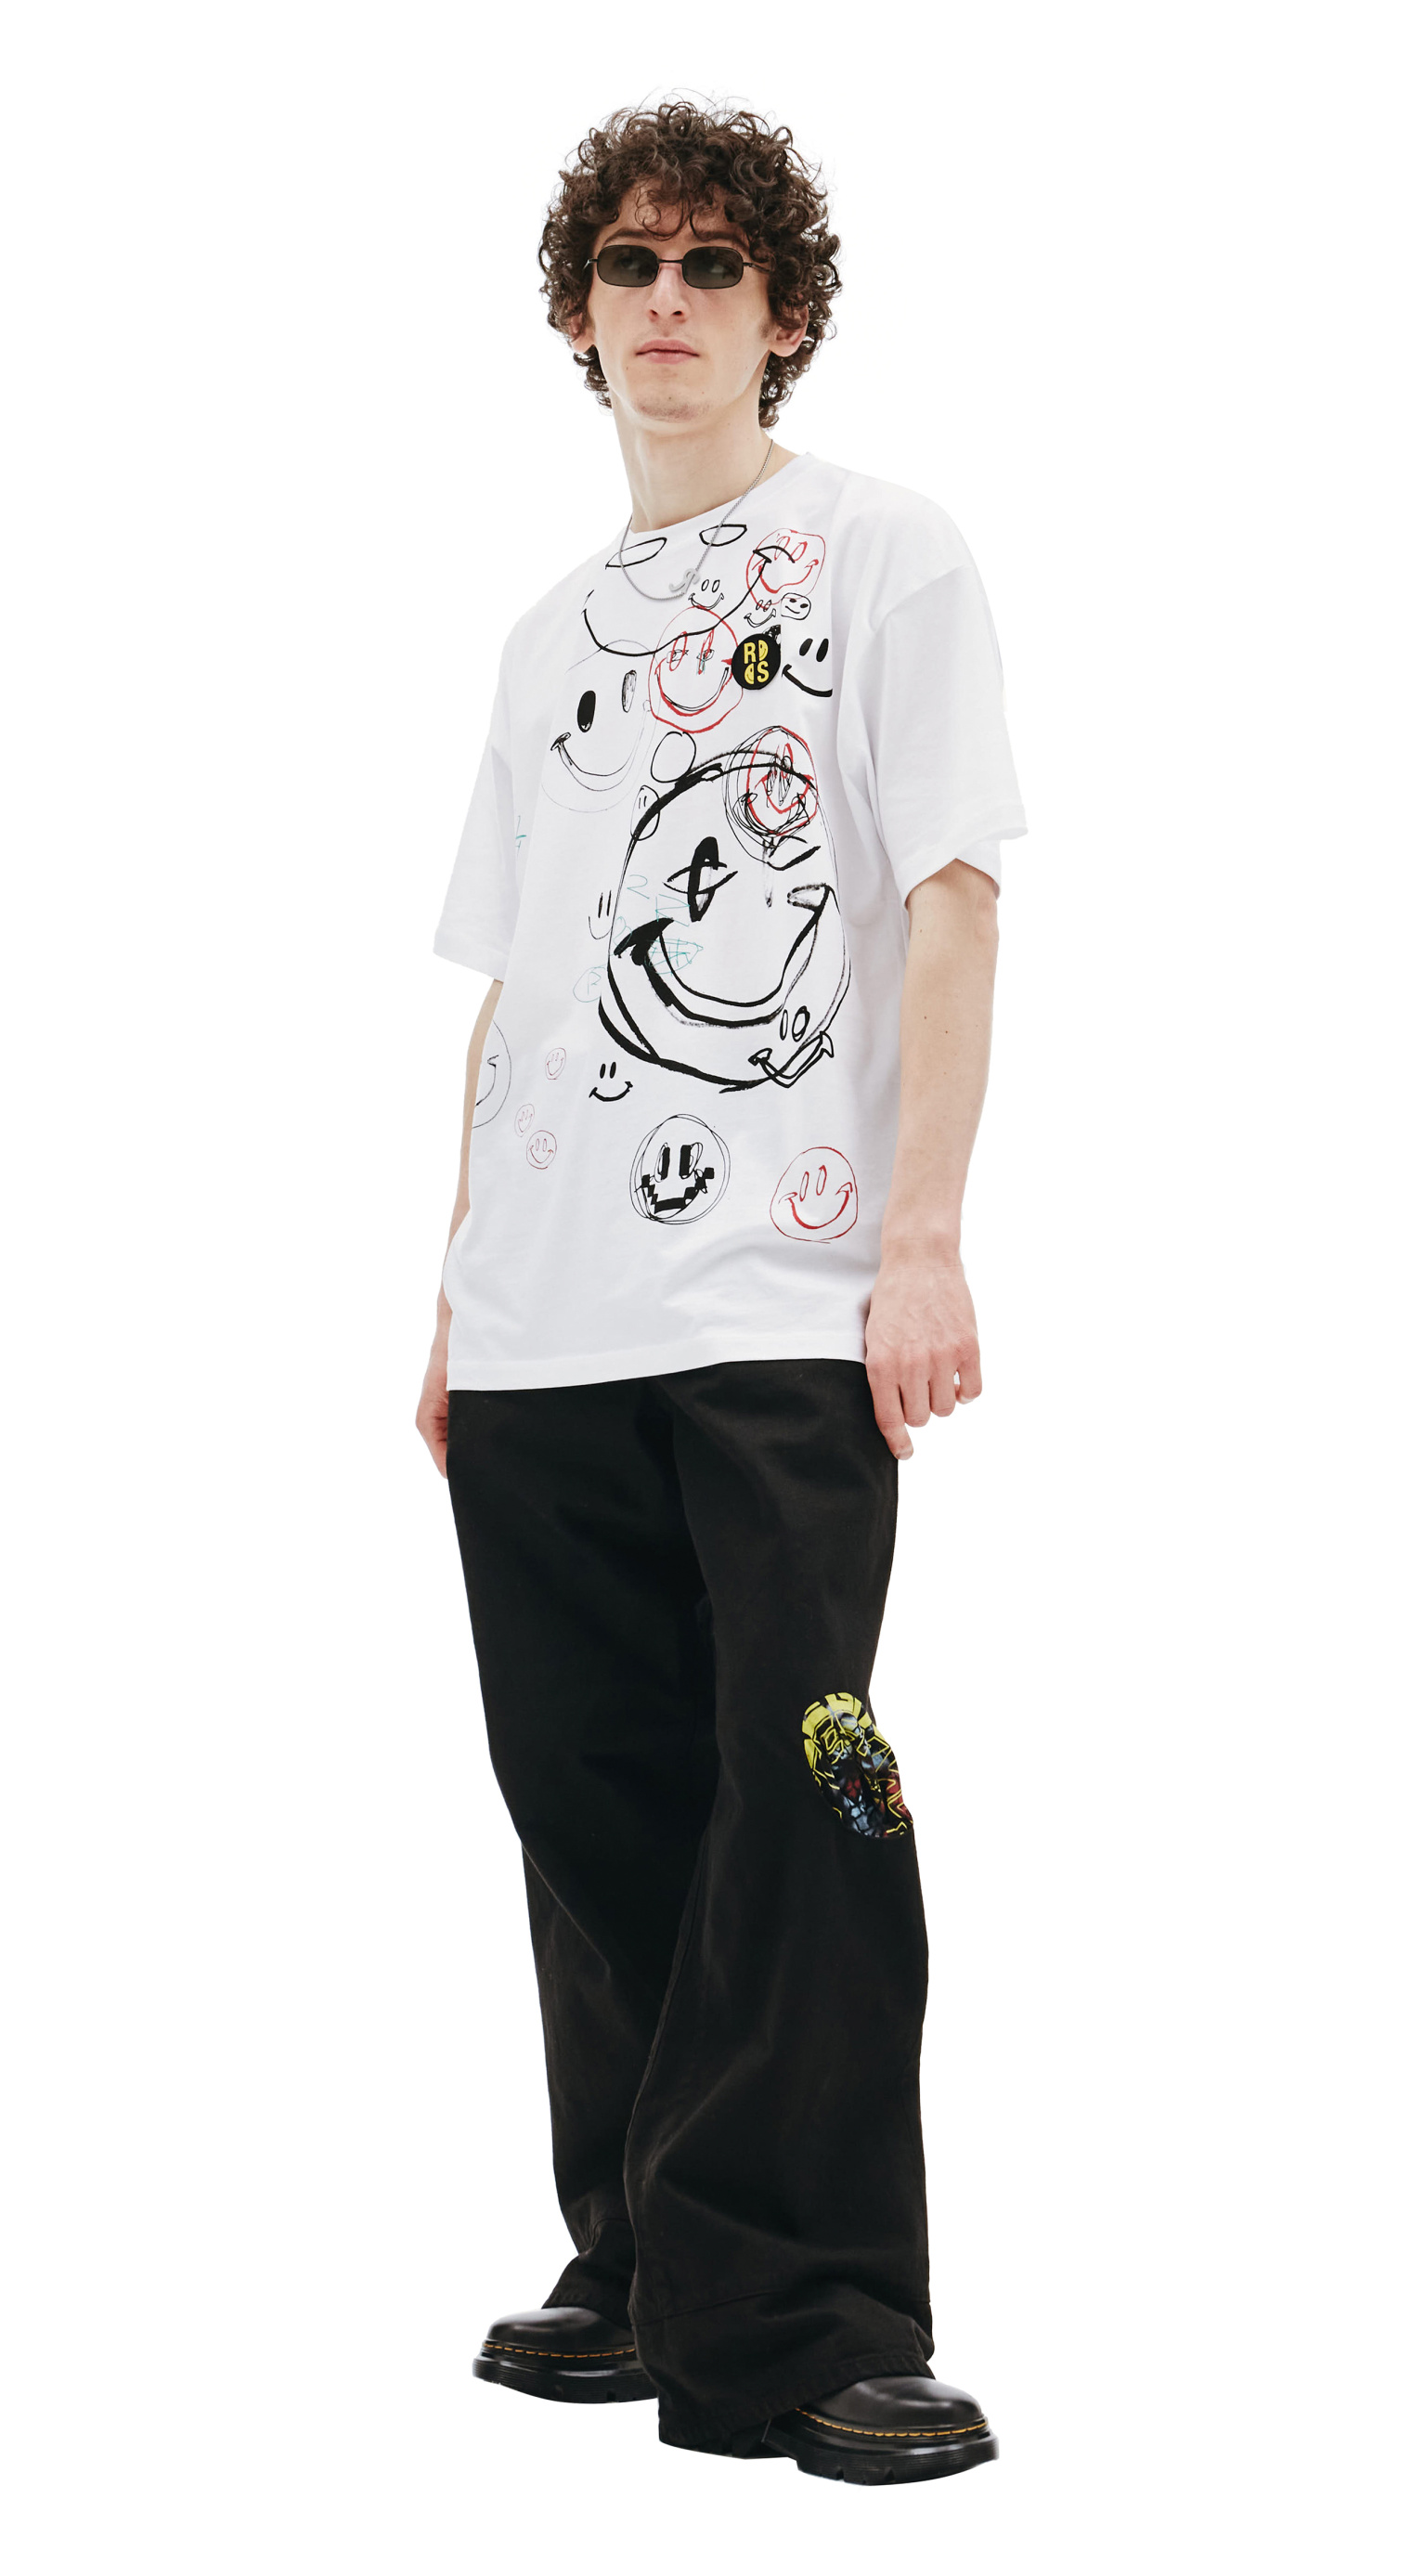 Raf Simons Raf Simons x Smiley Oversized Drawing Print T-Shirt